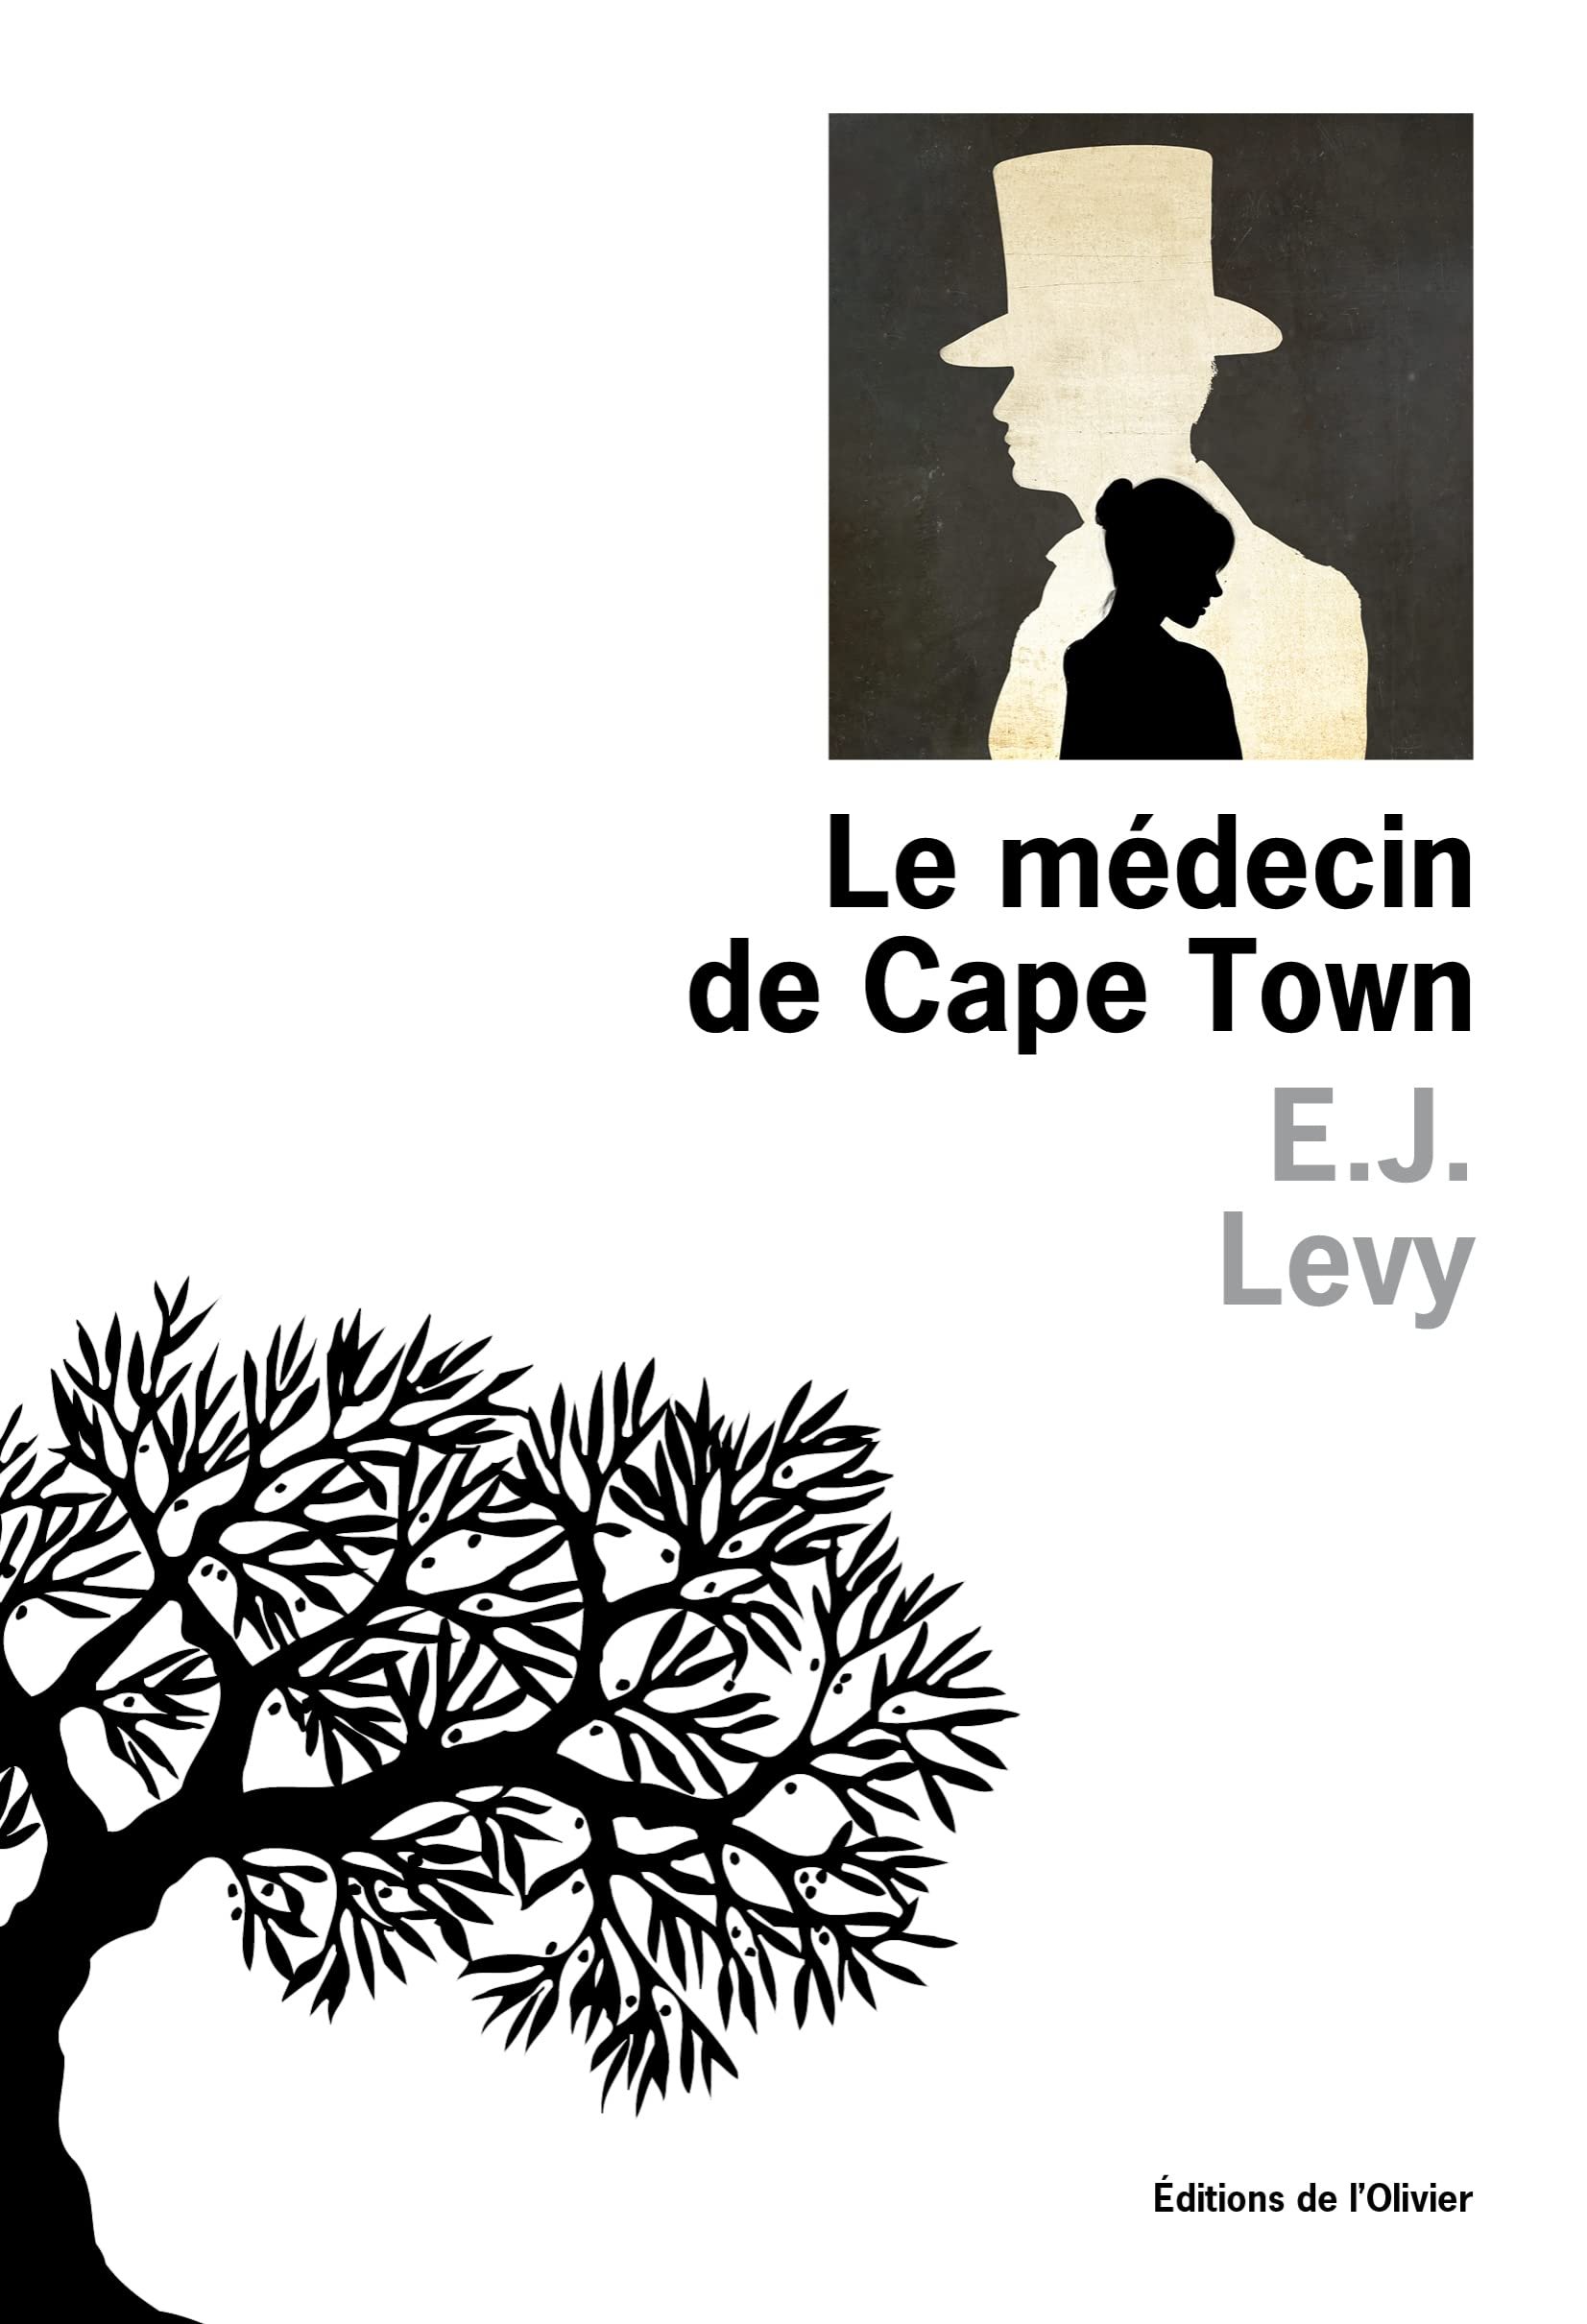 E. J. Levy – Le médecin de Cape Town